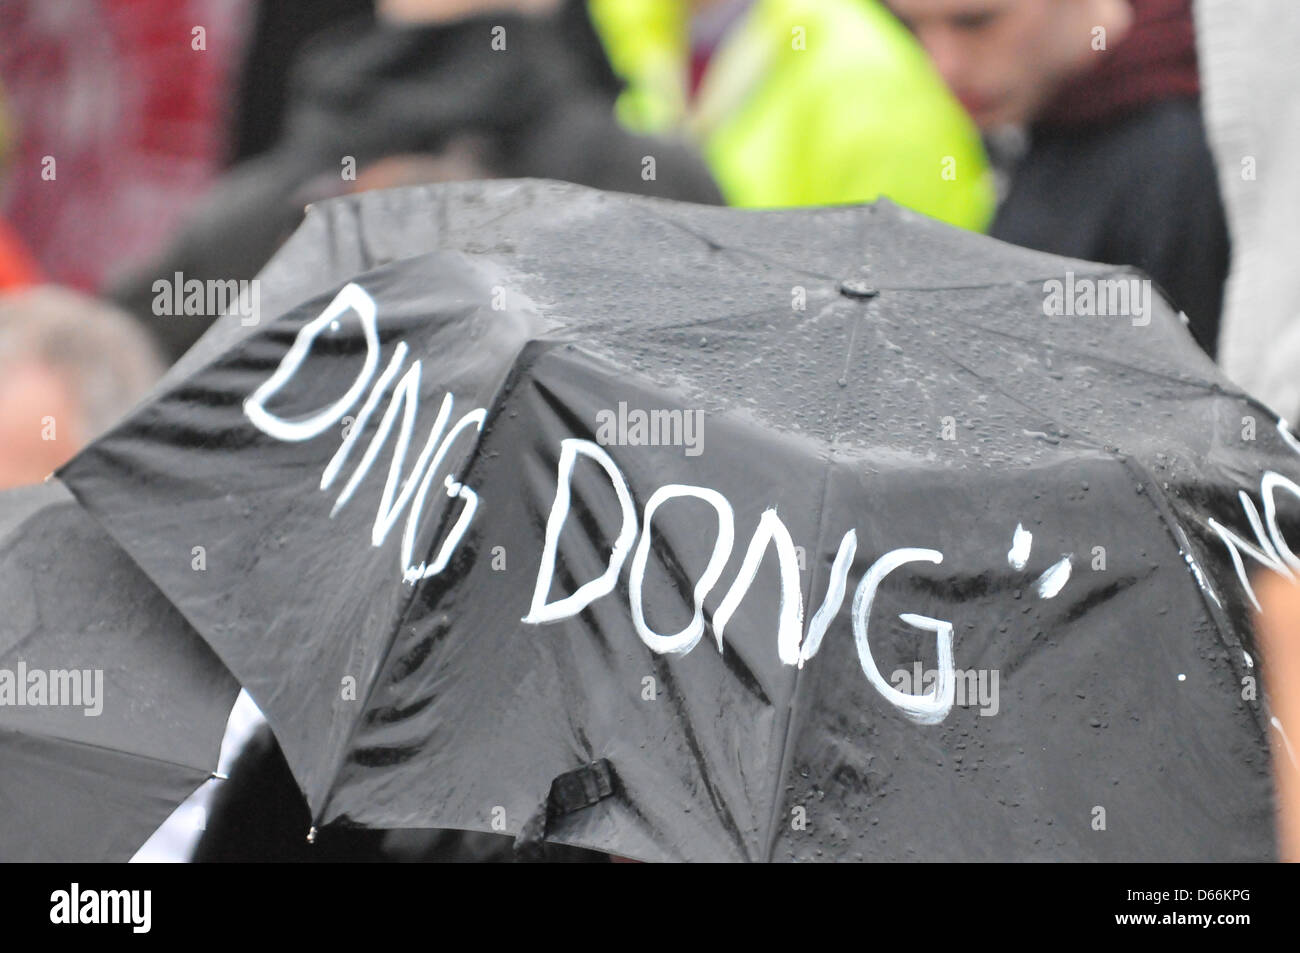 Trafalgar Square, Londres, Reino Unido. El 13 de abril de 2013. Un paraguas  con "ding dong" escrito en él haciendo referencia a la canción en los  gráficos. La protesta en Trafalgar Square